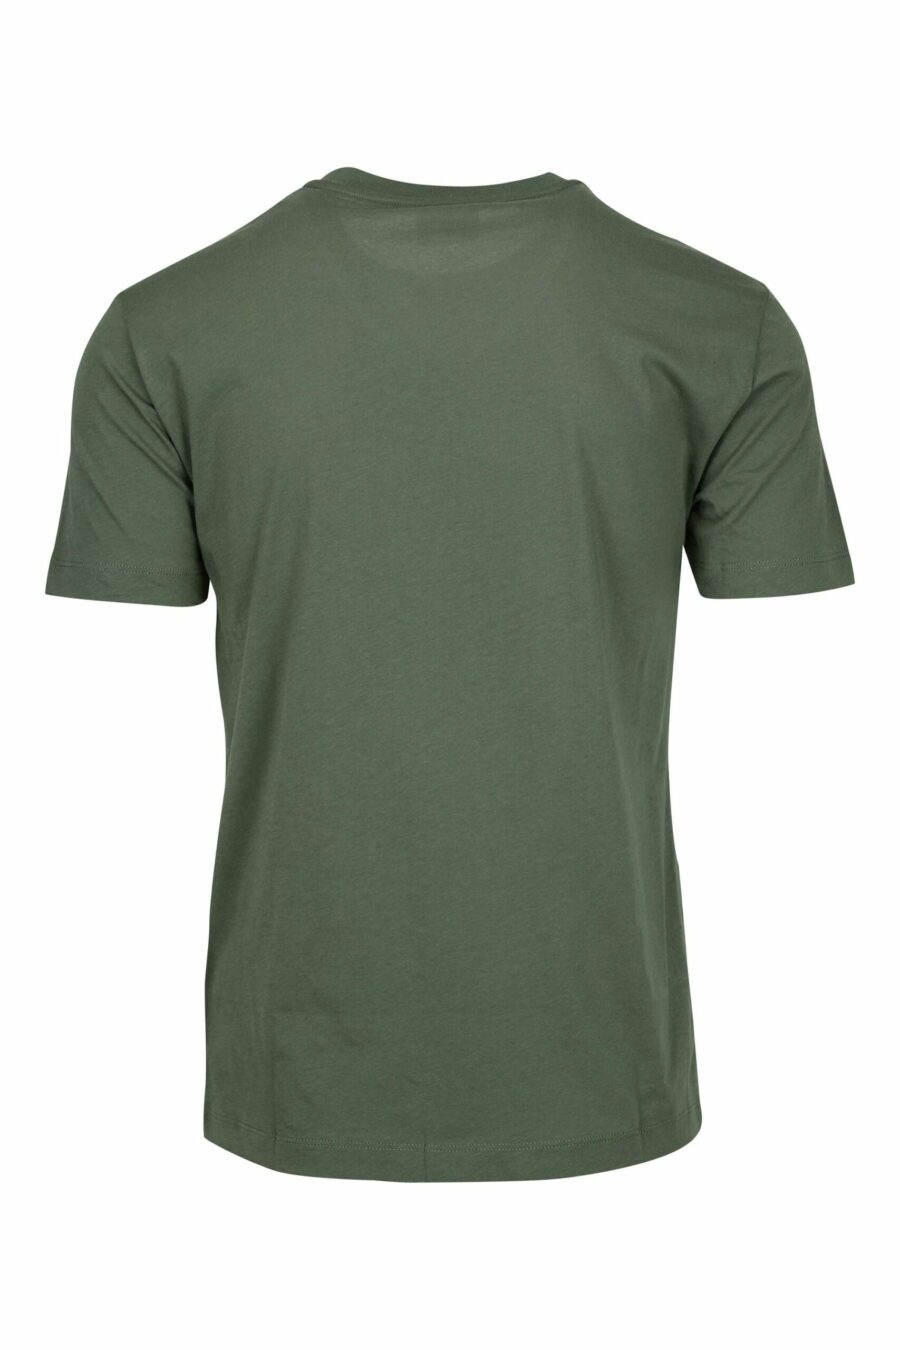 T-shirt vert avec dégradé "lux identity" maxilogo - 8058947508334 1 scaled